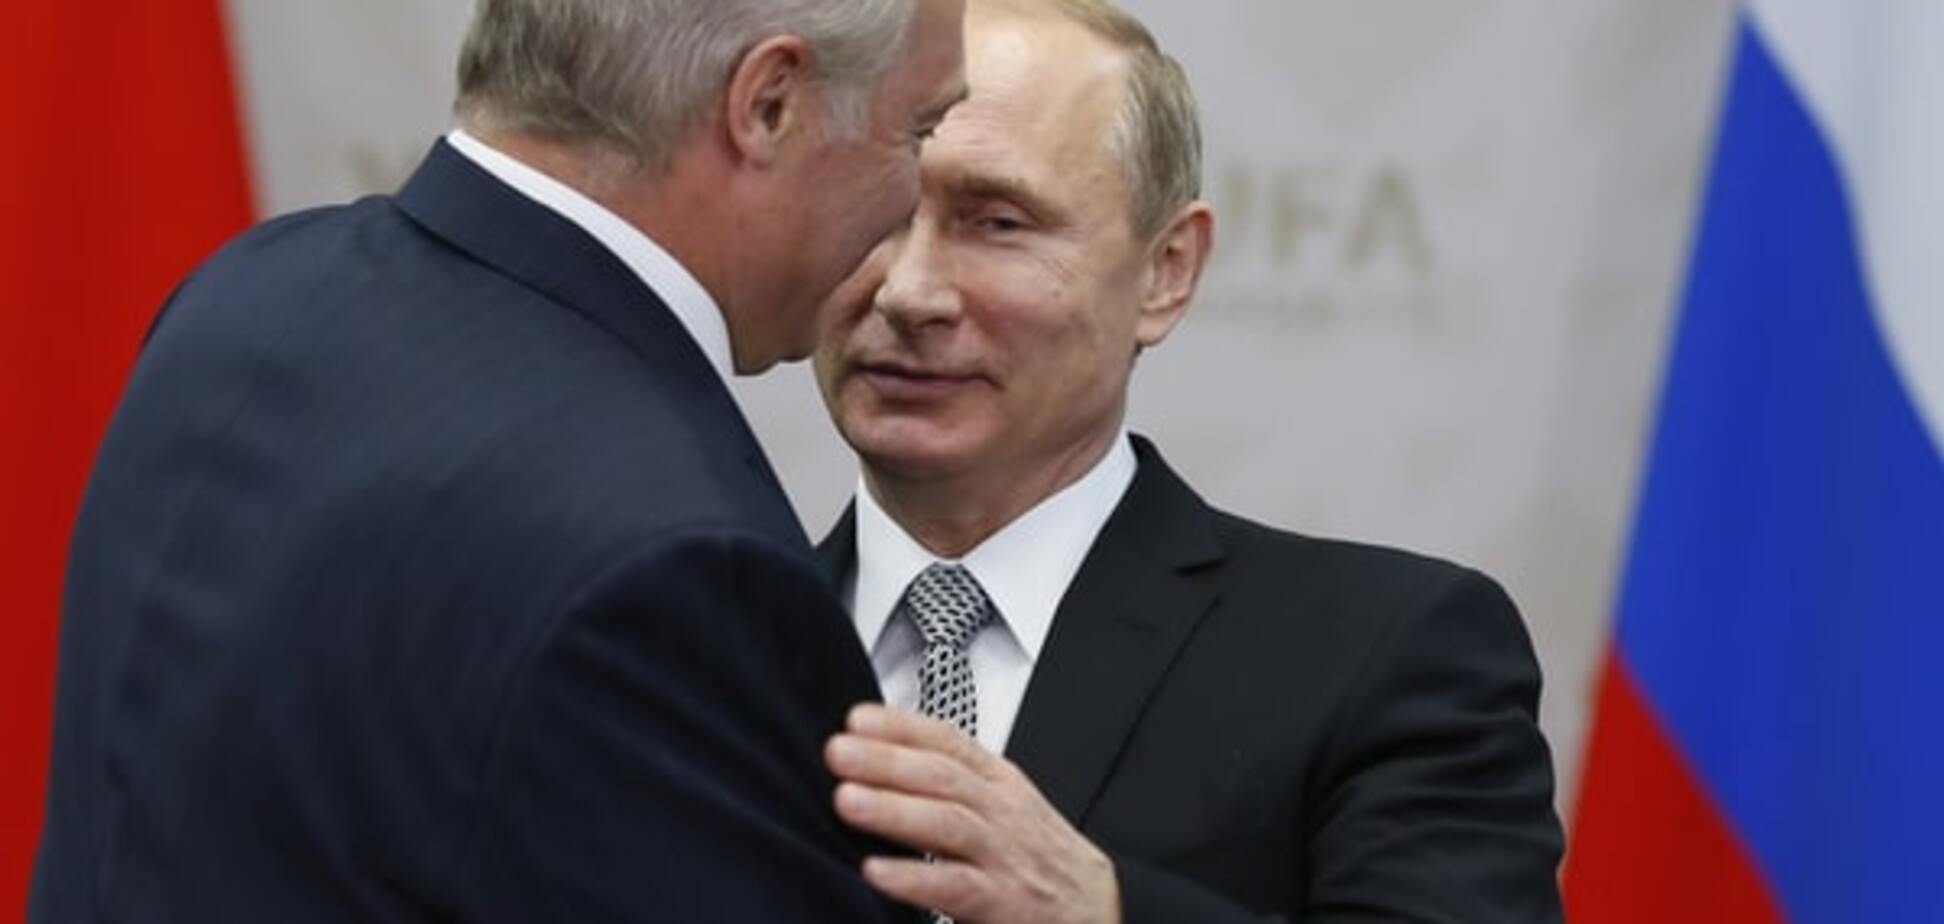 Пєсков 'злив' розмову Путіна і Лукашенка про військову базу в Білорусі